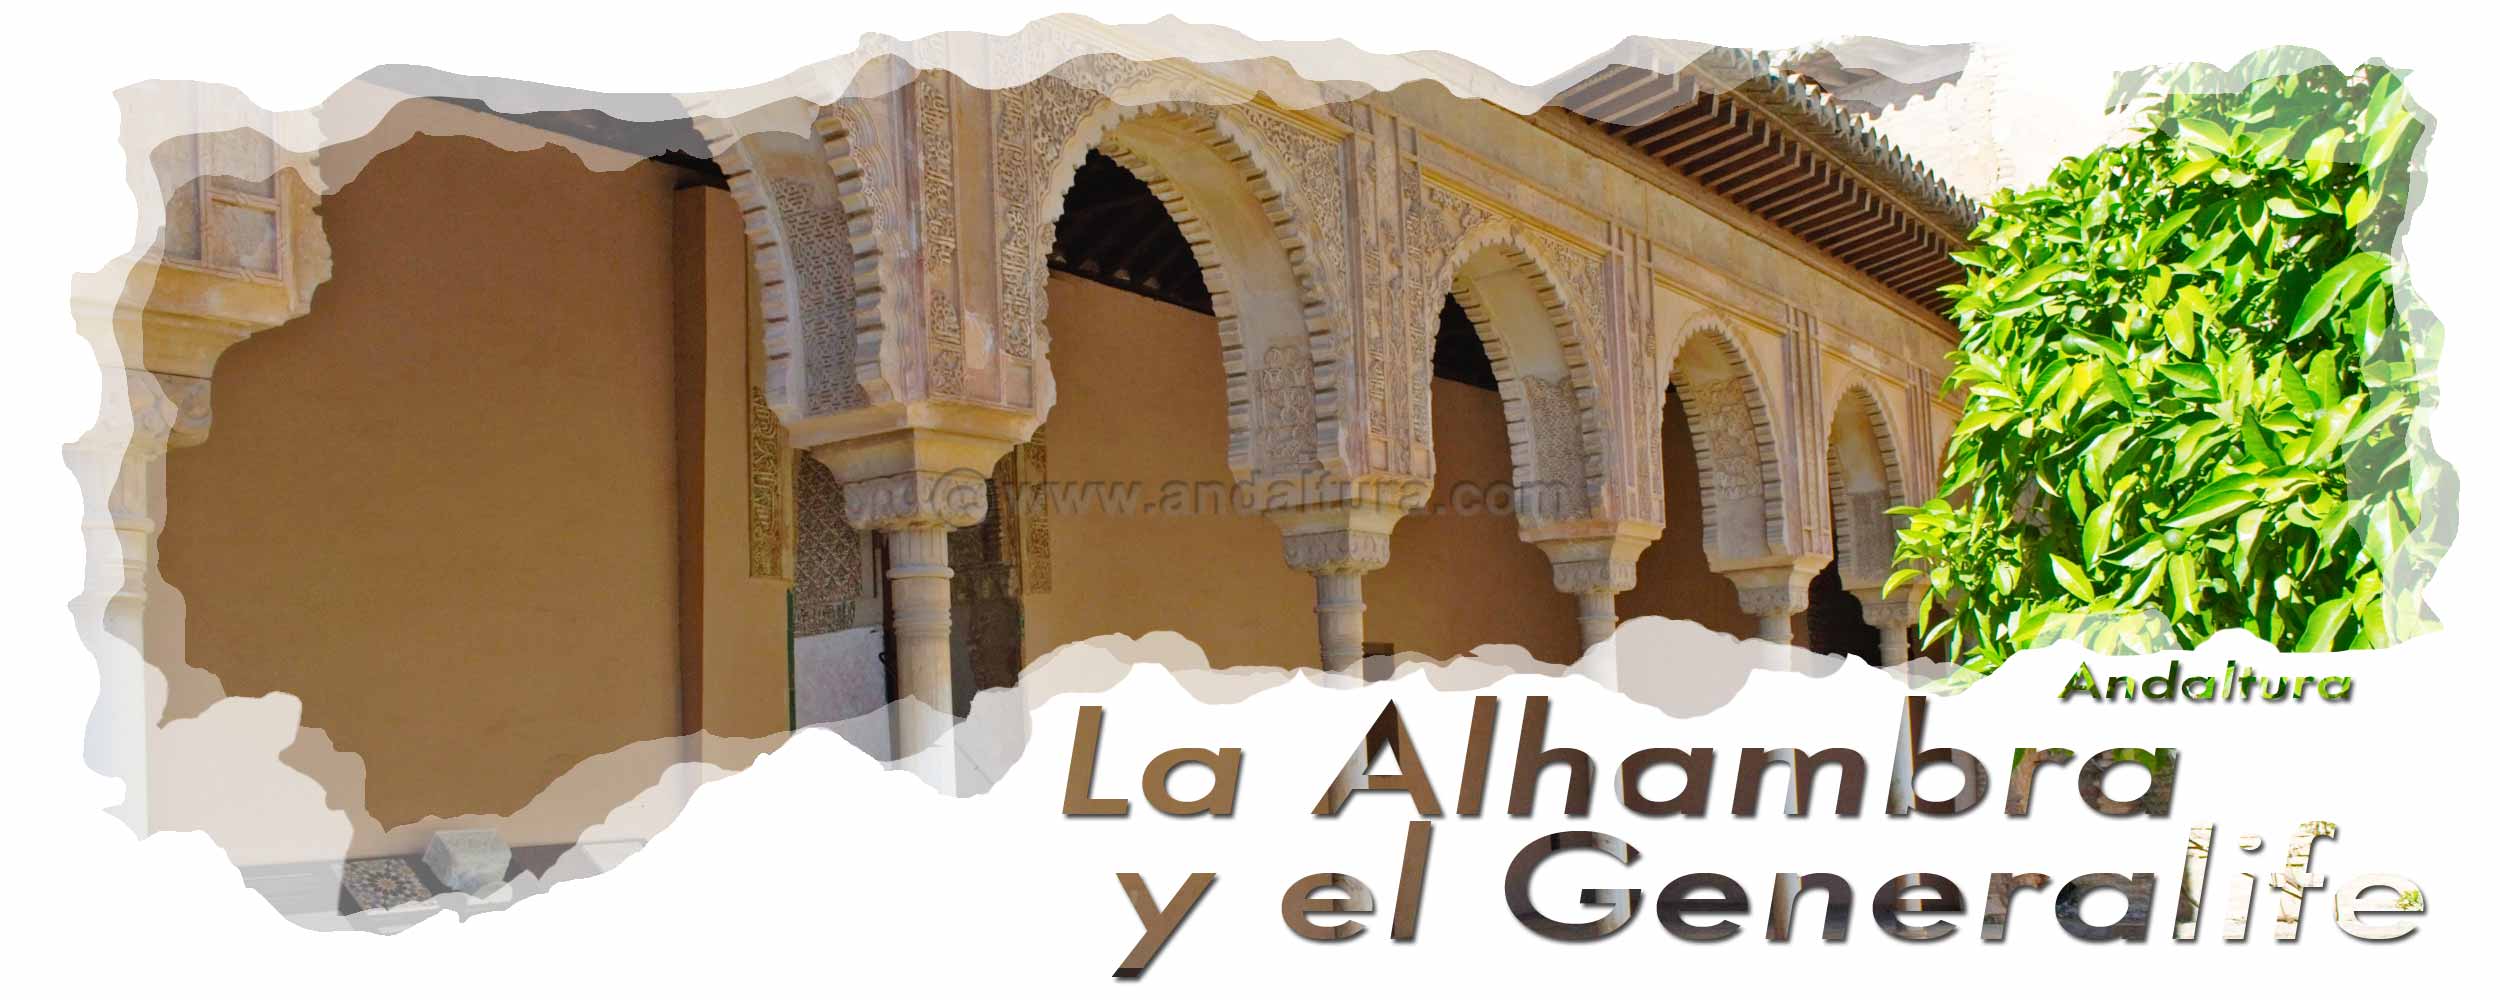 Columnas de mármol y arcos decorados con yeserías hacia la Torre de Machuca - Cabecera visita durante los últimos turnos de la Alhambra